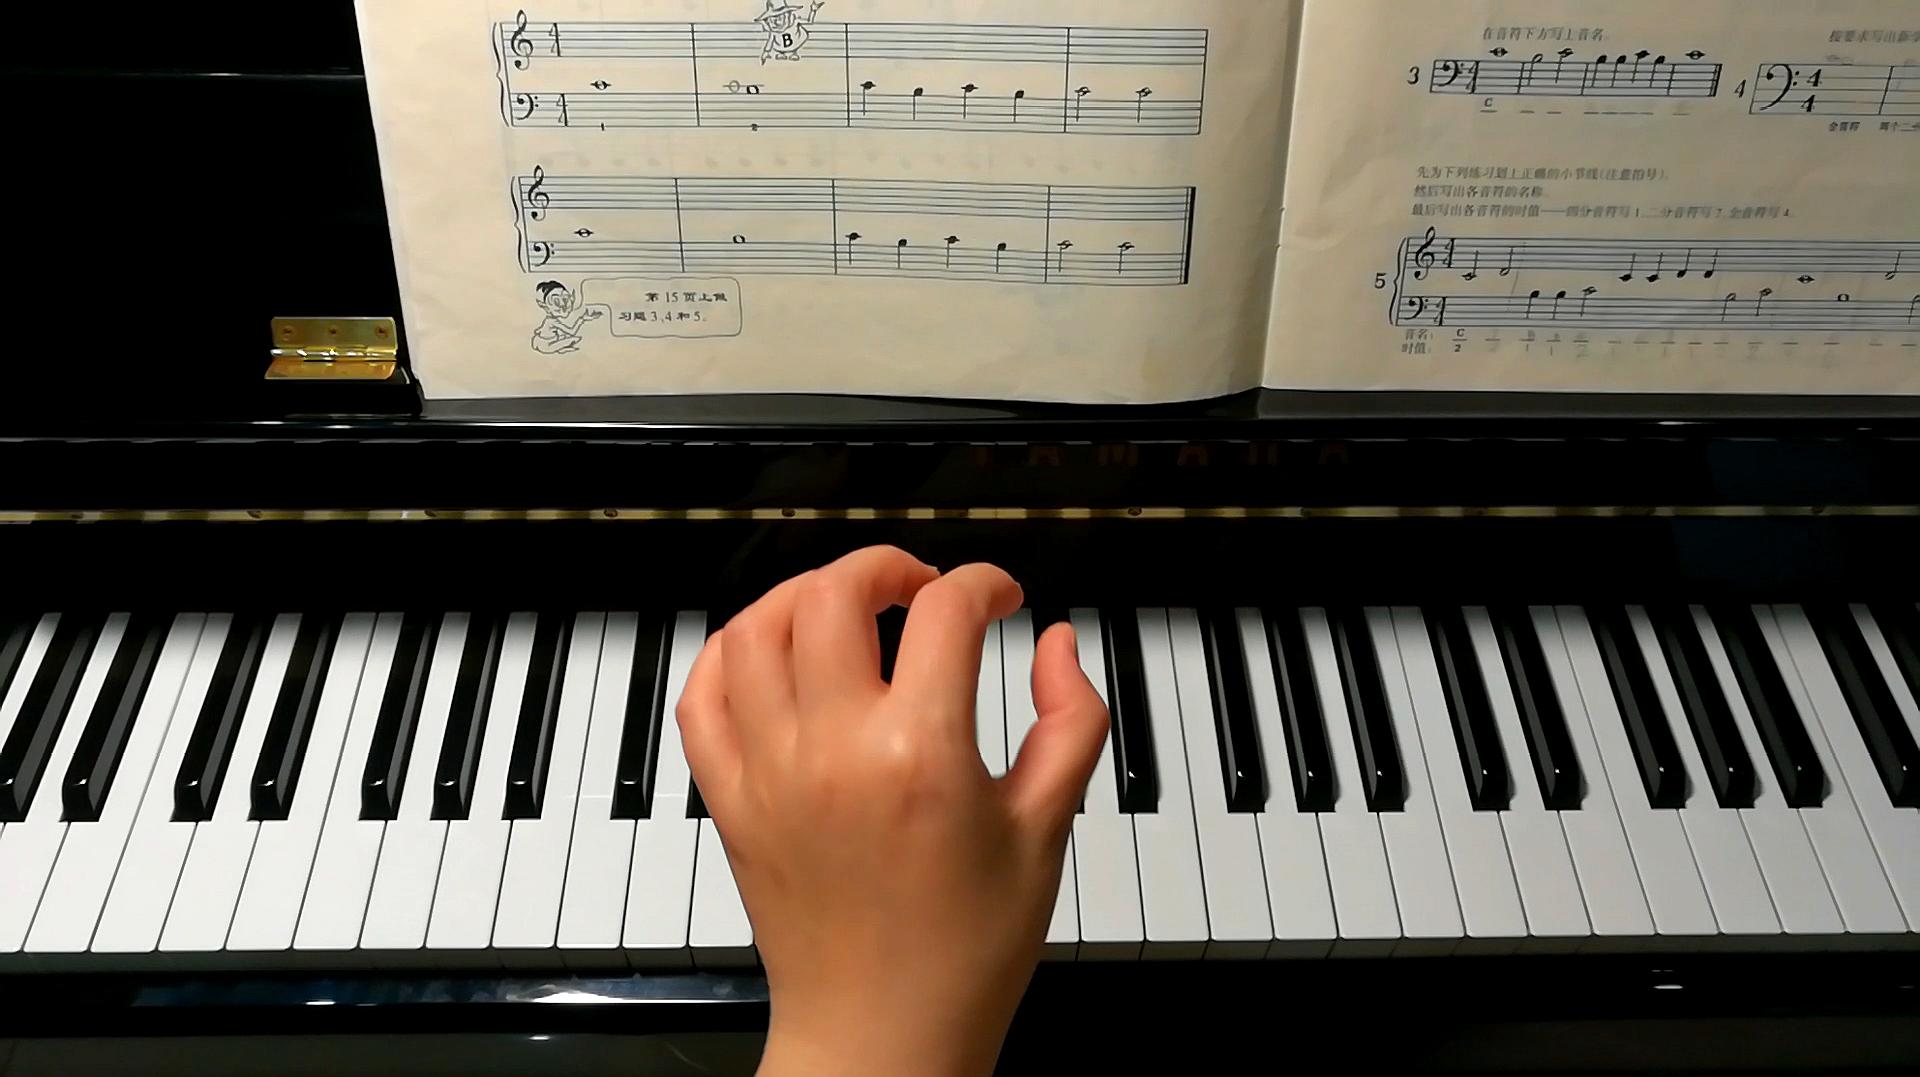 [图]陈老师钢琴课堂第9课:学习B音,识谱并弹奏《海军工兵》